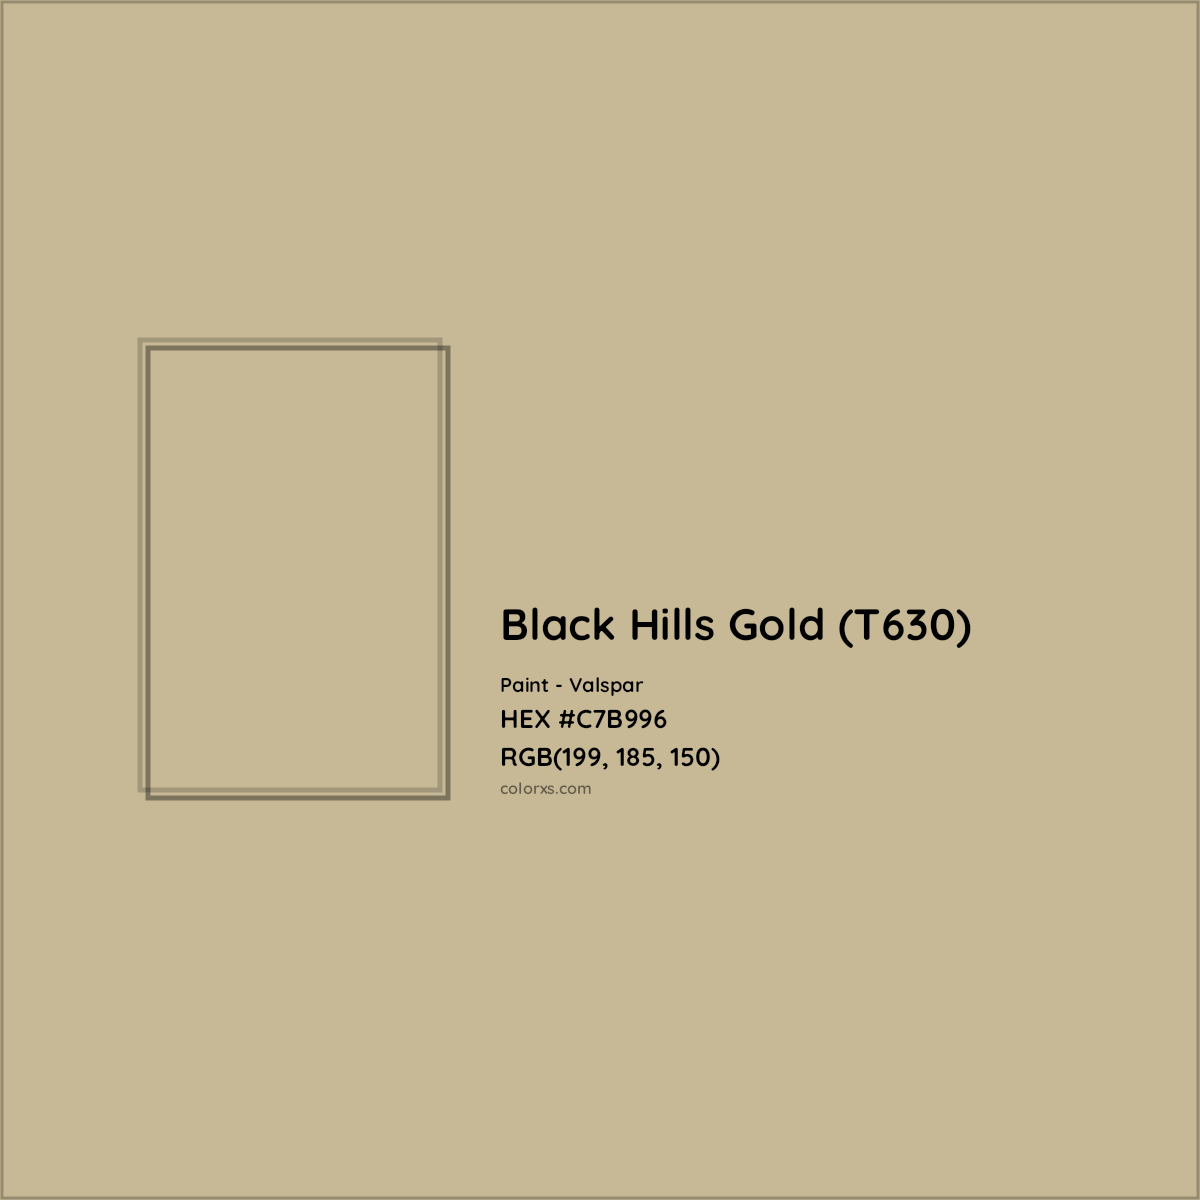 HEX #C7B996 Black Hills Gold (T630) Paint Valspar - Color Code